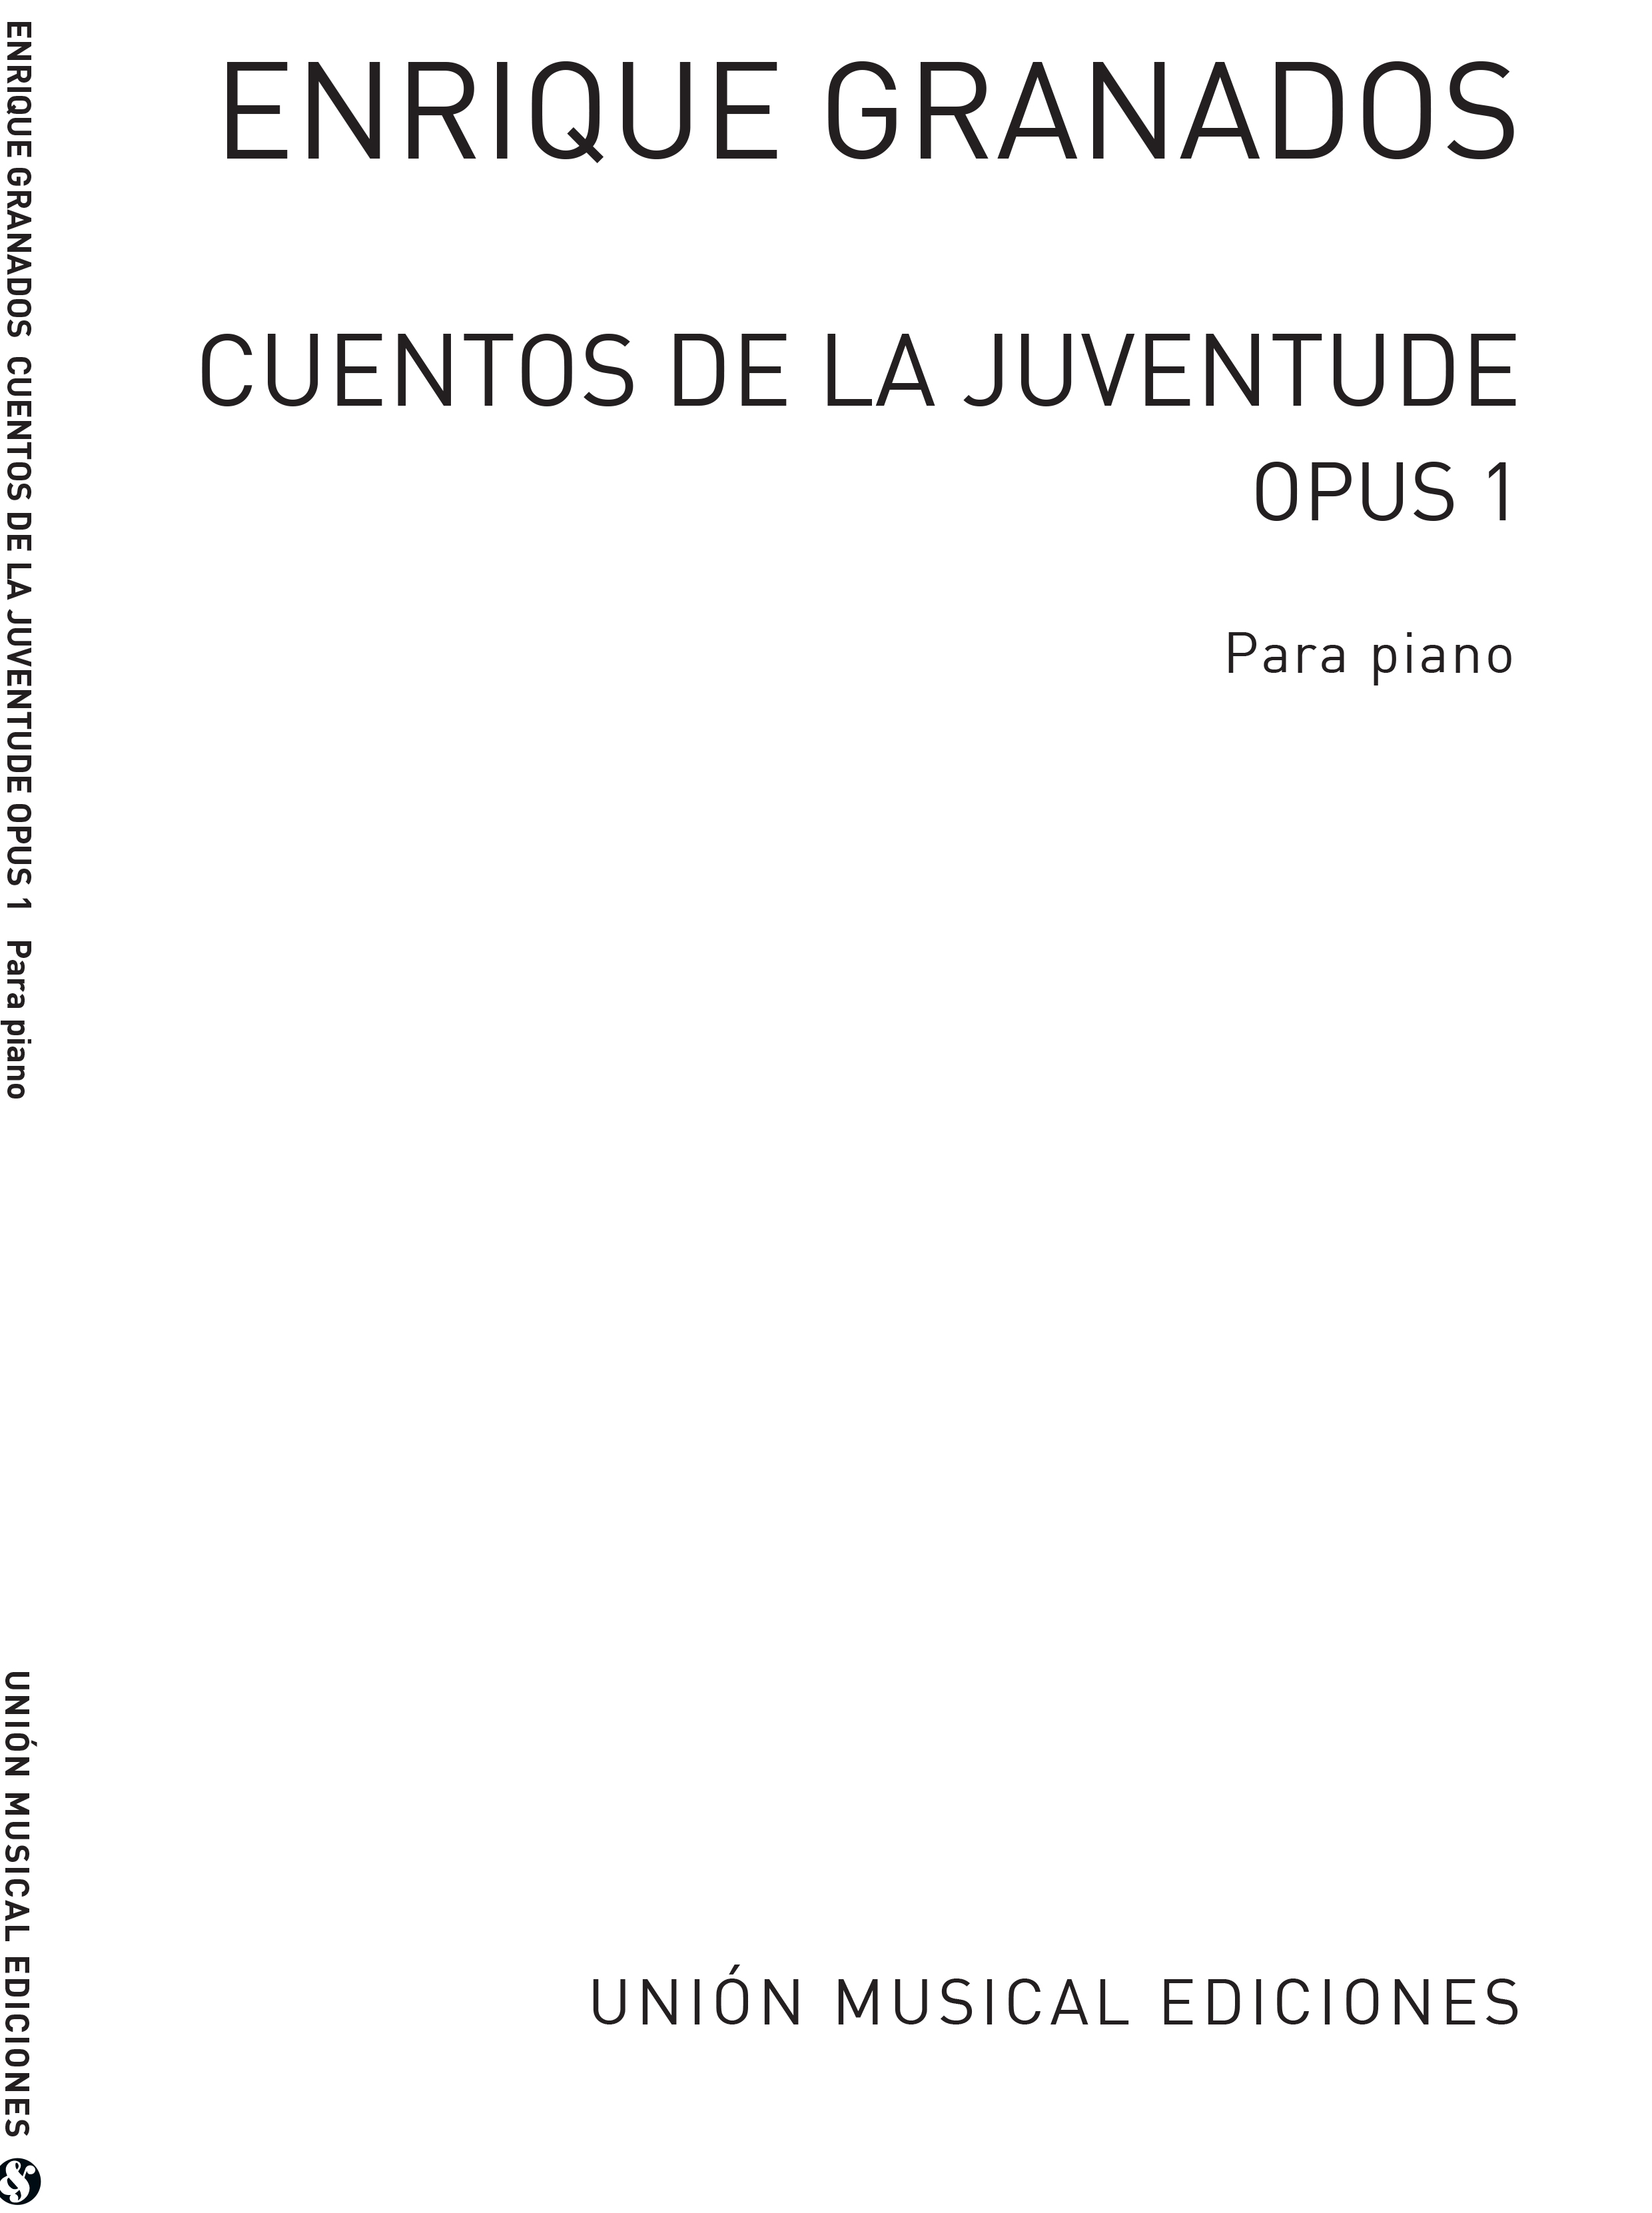 Enrique Granados: Cuentos De La Juventud Op.1 (Album For The Young): Piano: